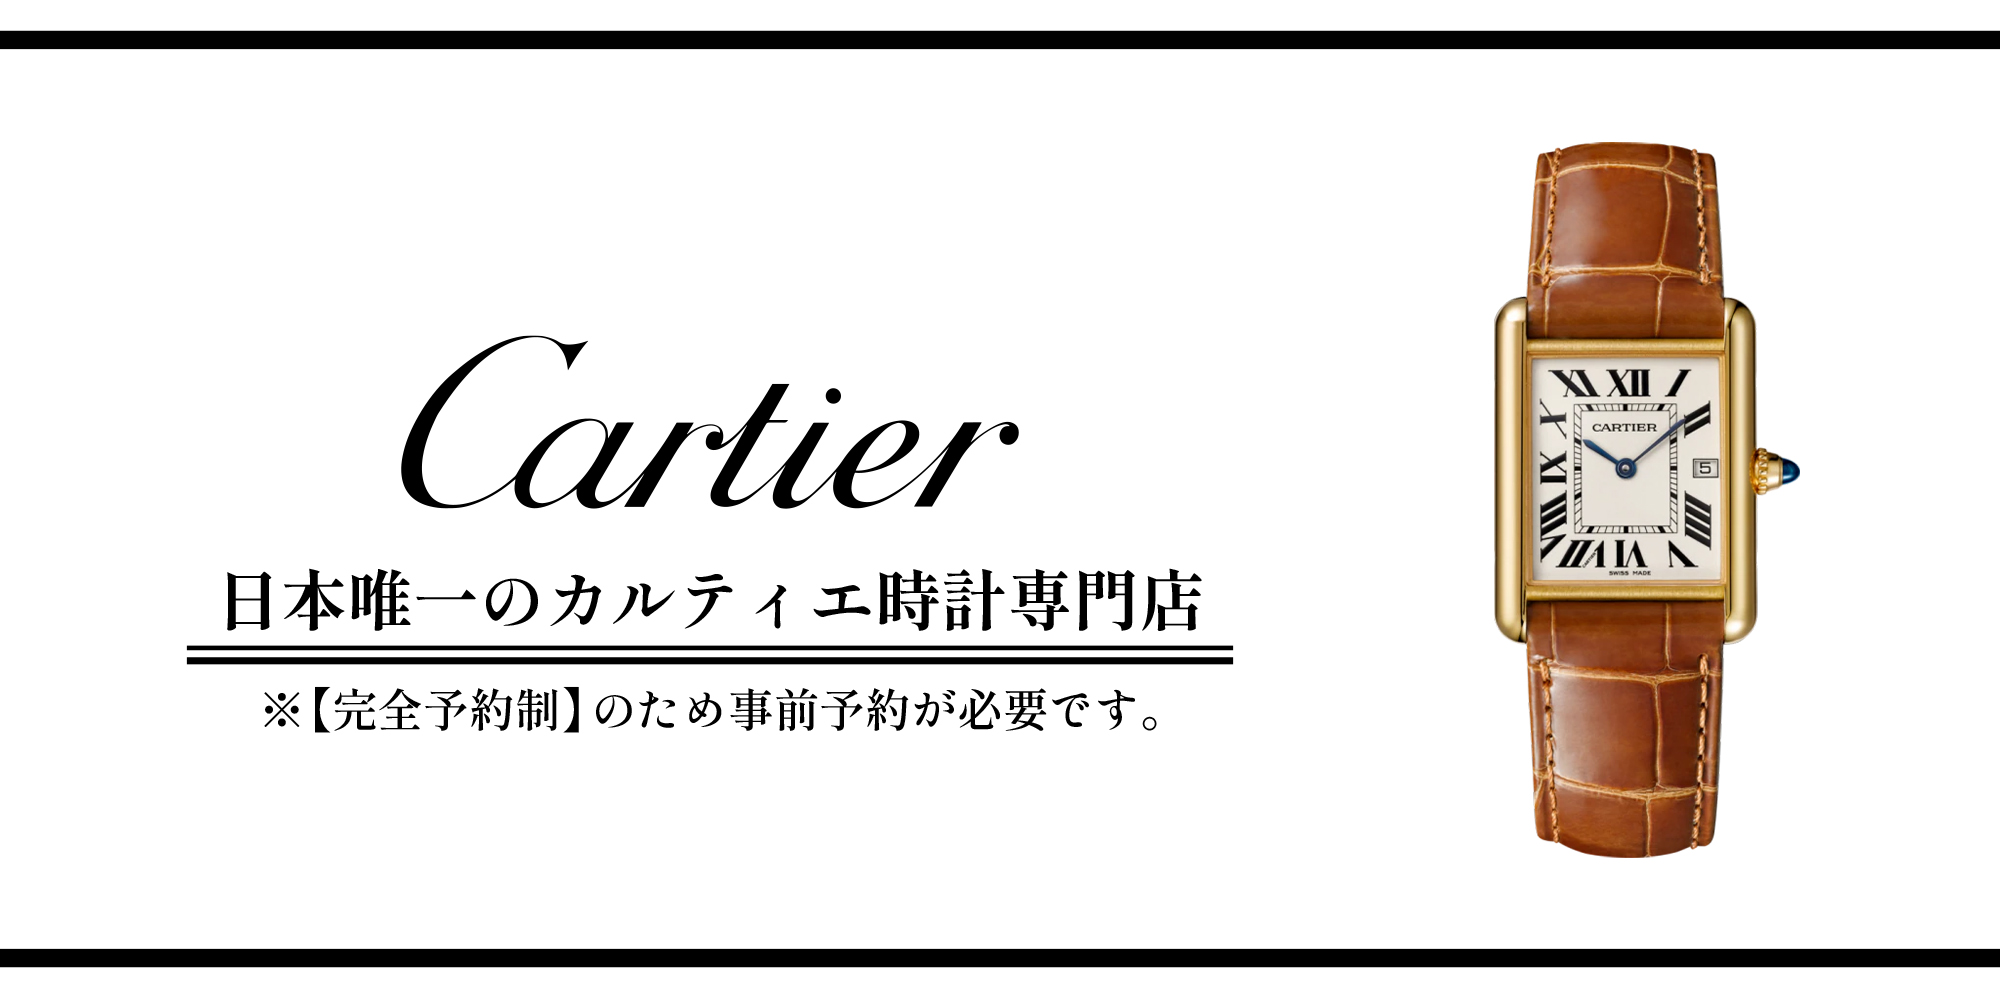 日本唯一のカルティエ時計専門店 完全予約制のため事前予約必須